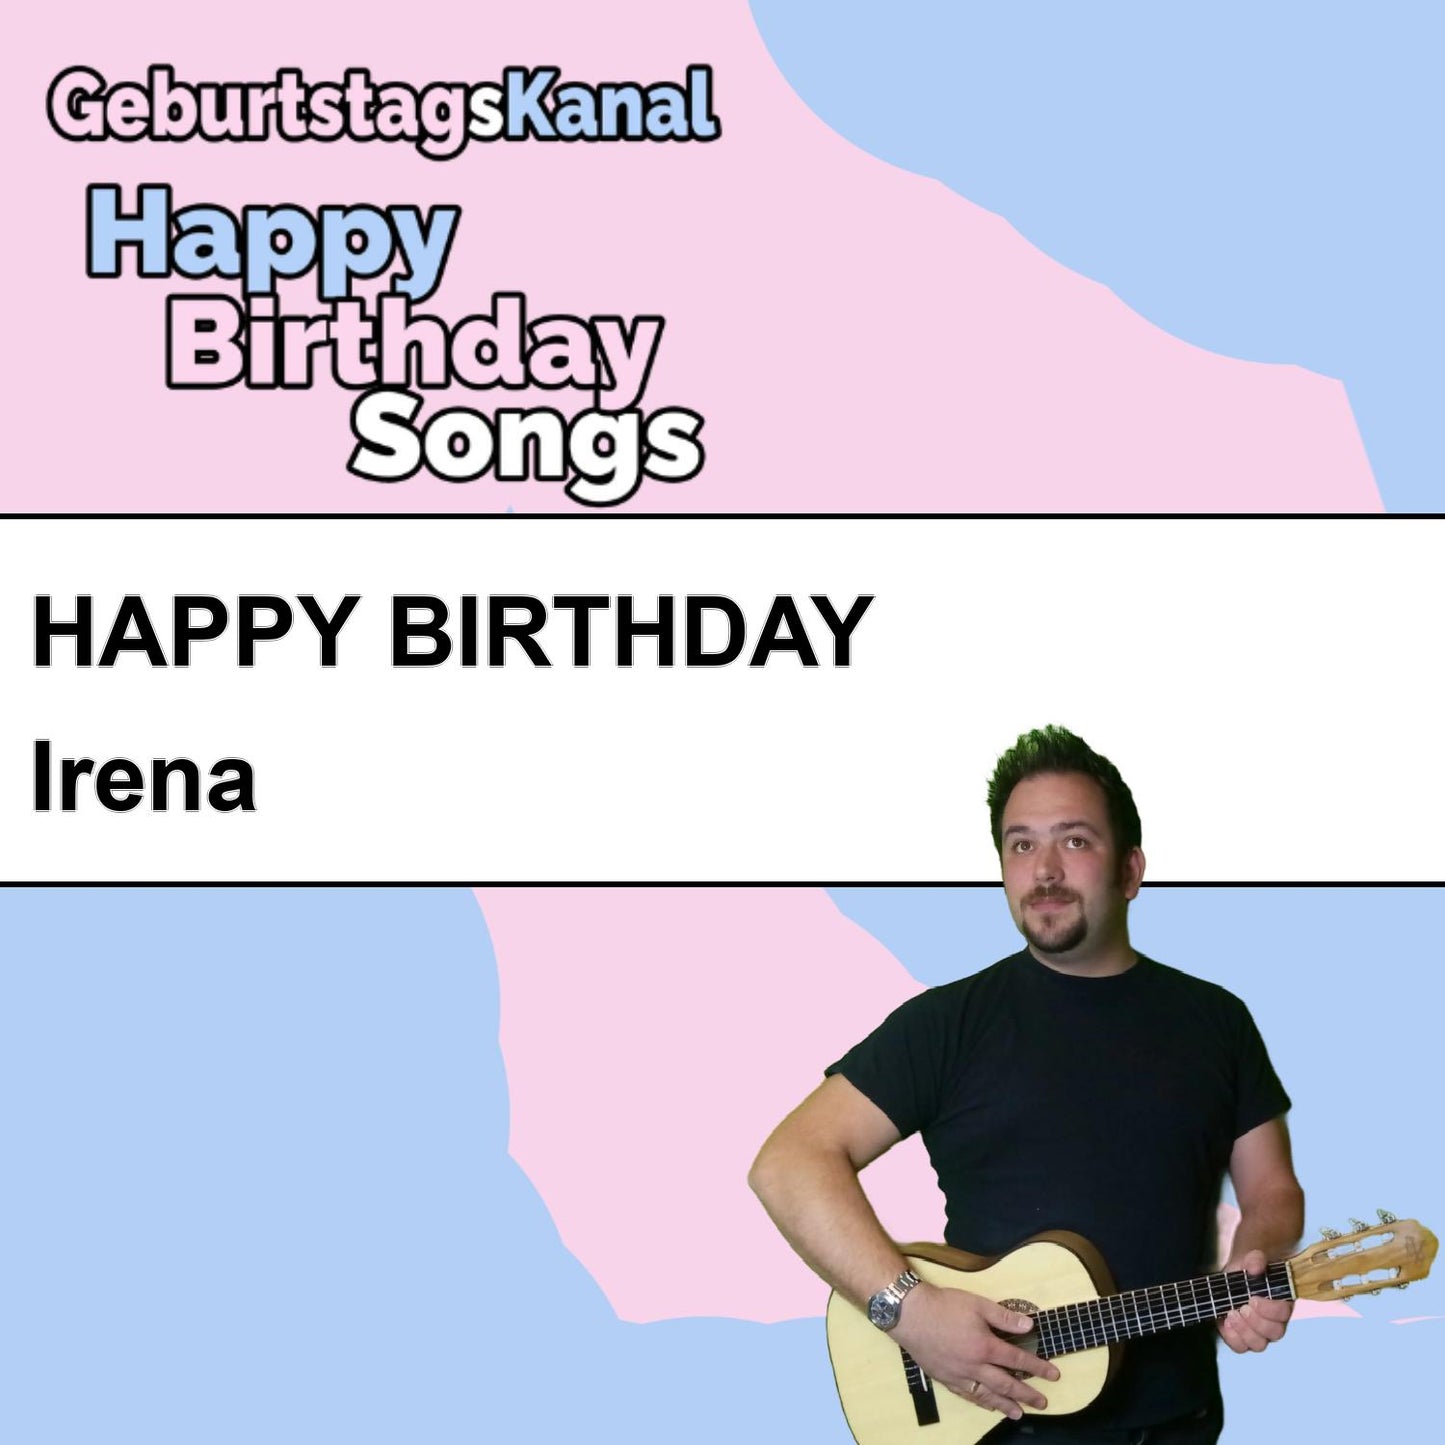 Produktbild Happy Birthday to you Irena mit Wunschgrußbotschaft